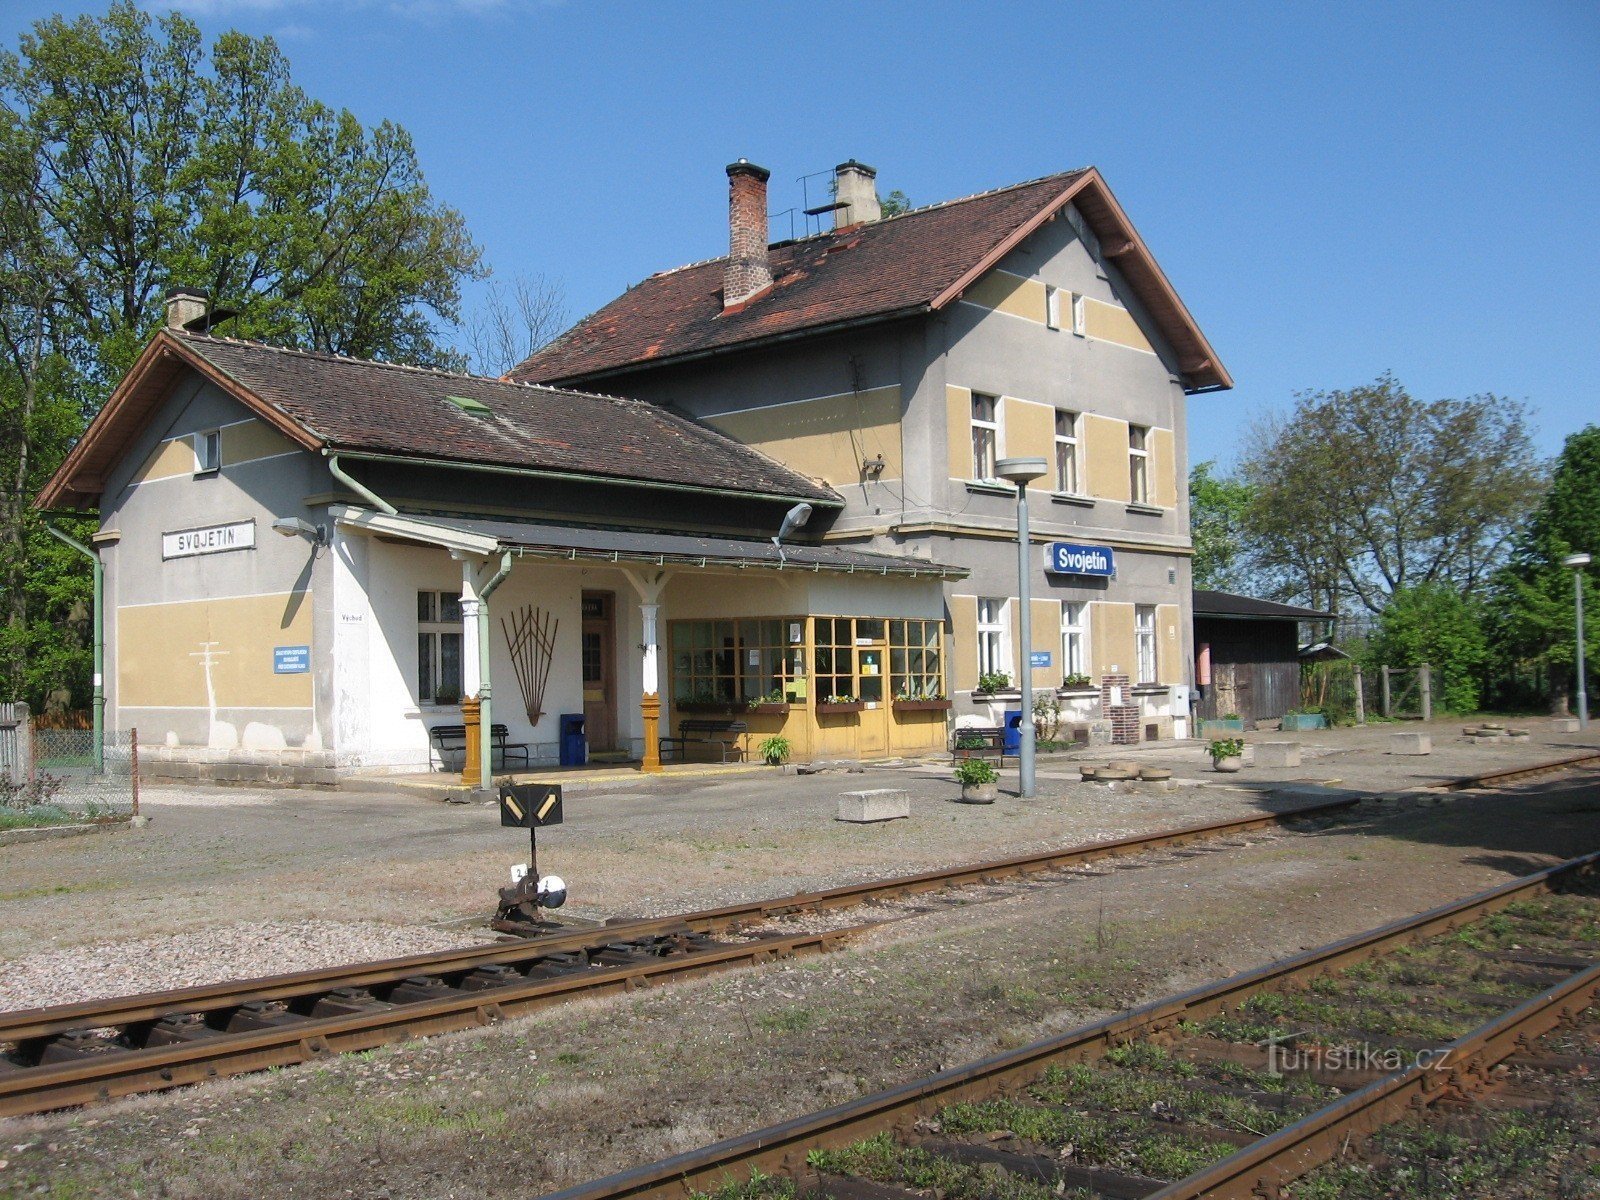 Станция Своетин